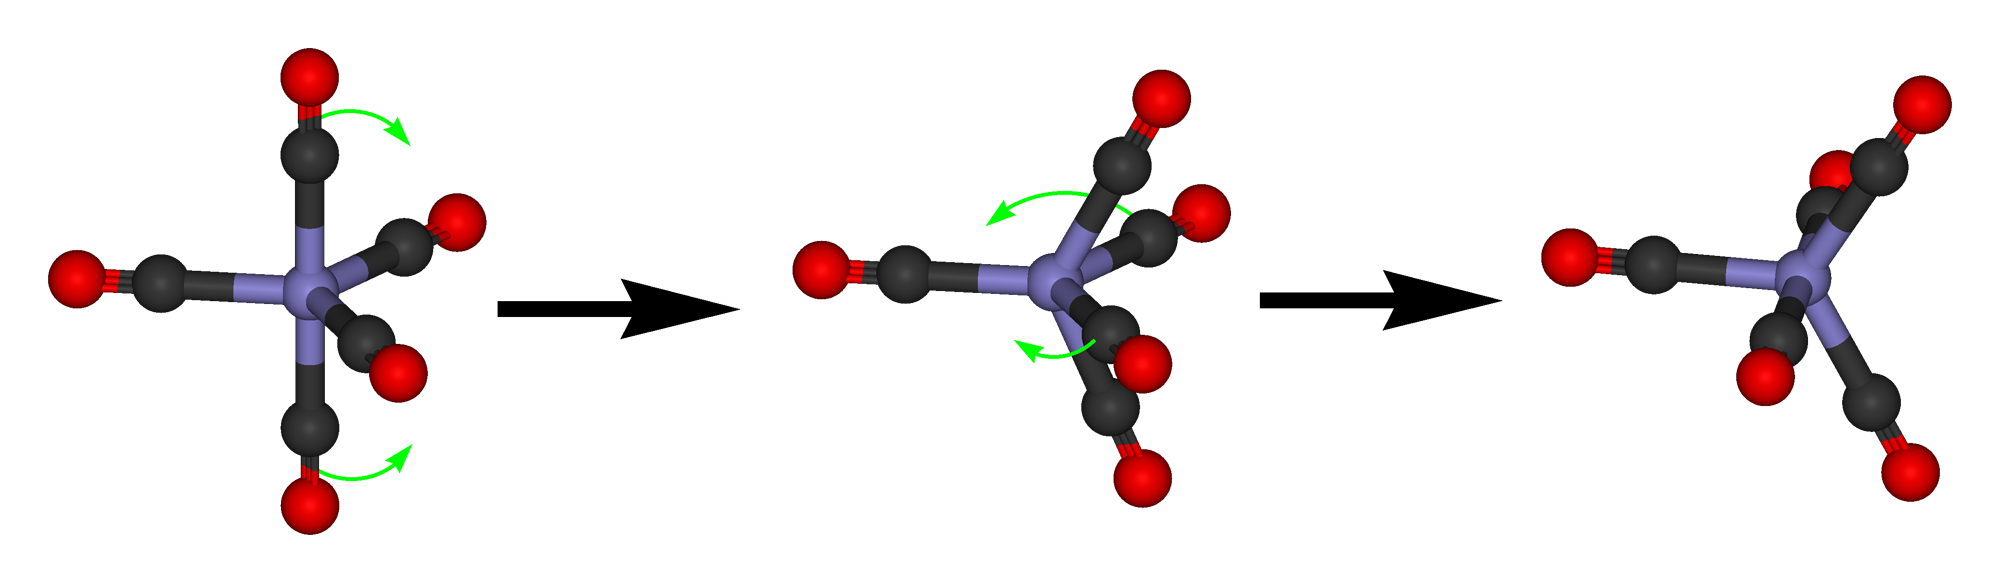 Iron-pentacarbonyl-Berry-mechanism.png